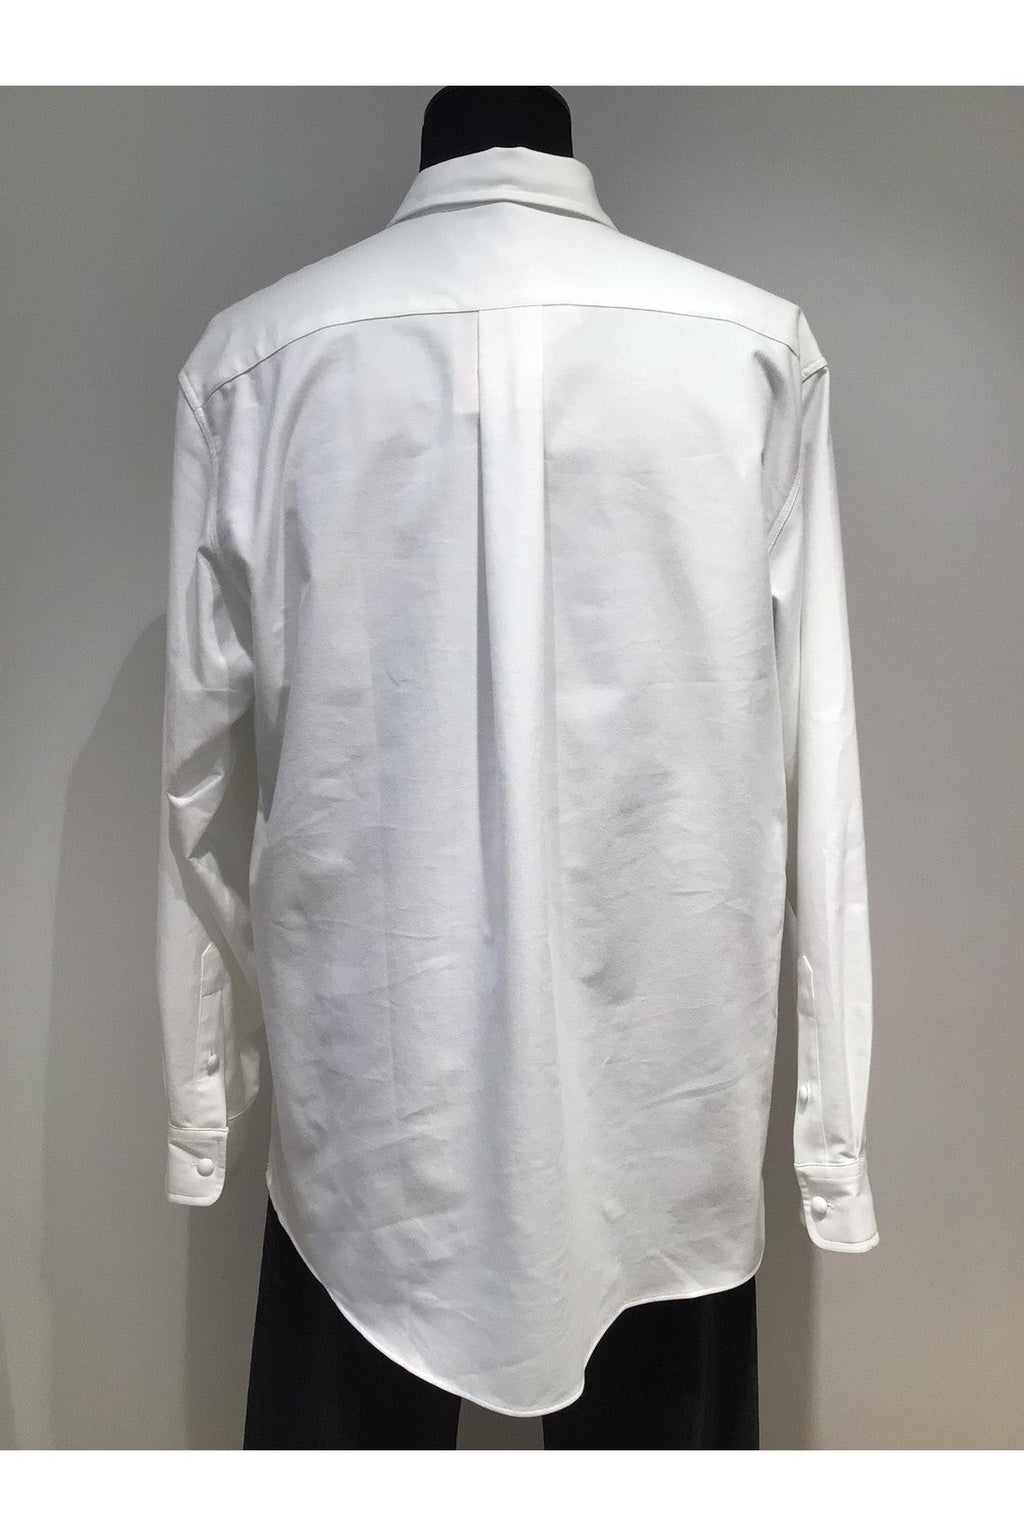 Kenzo-OUTLET-SALE-Cotton button-down shirt-ARCHIVIST